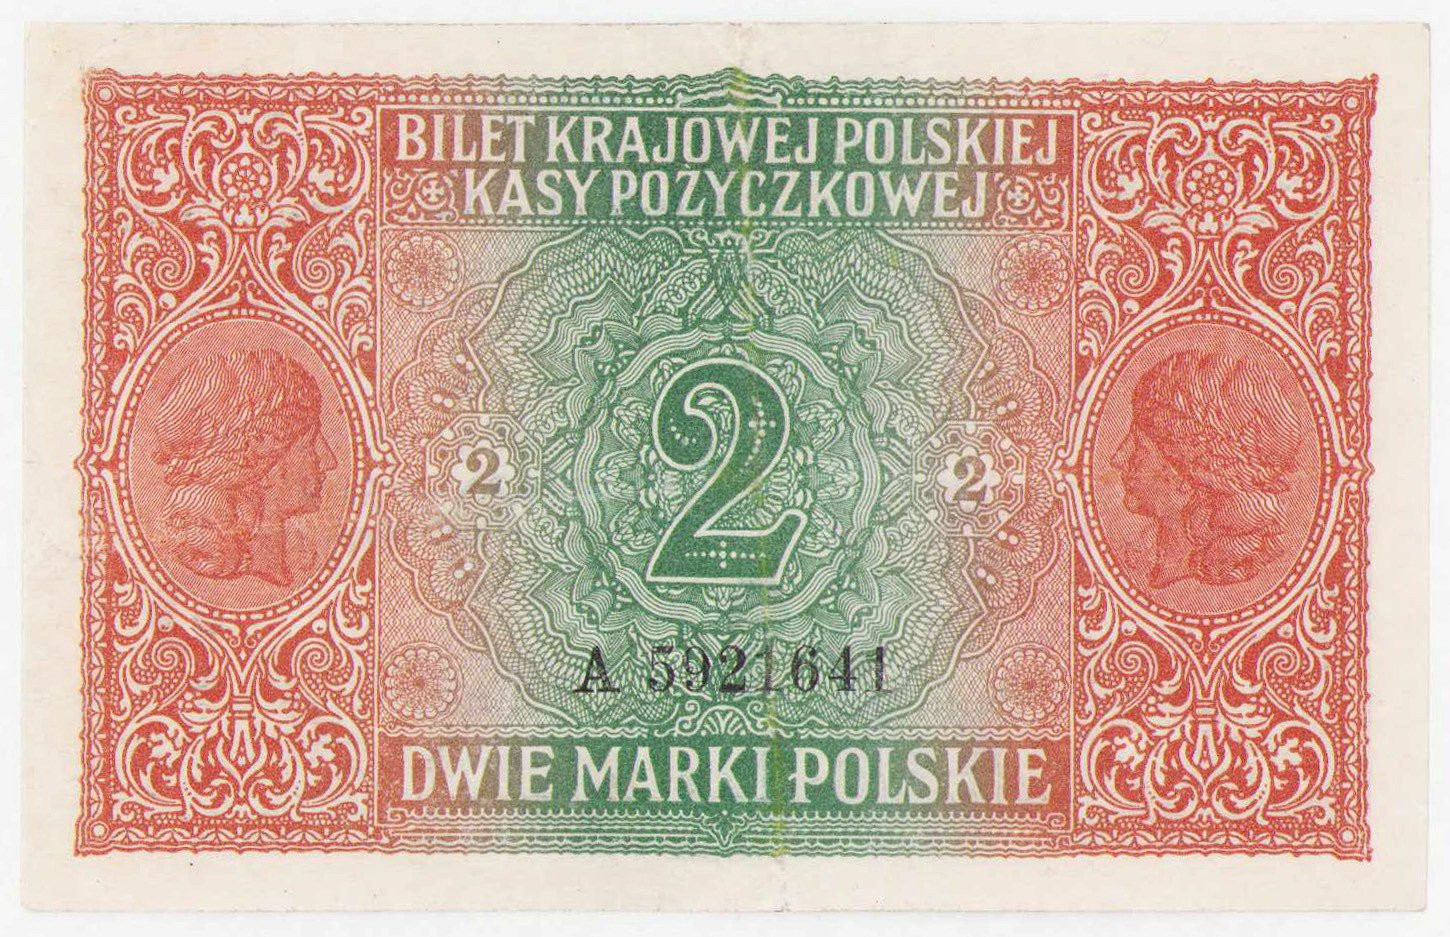 2 marki polskie 1916 seria A - jenerał - RZADKI